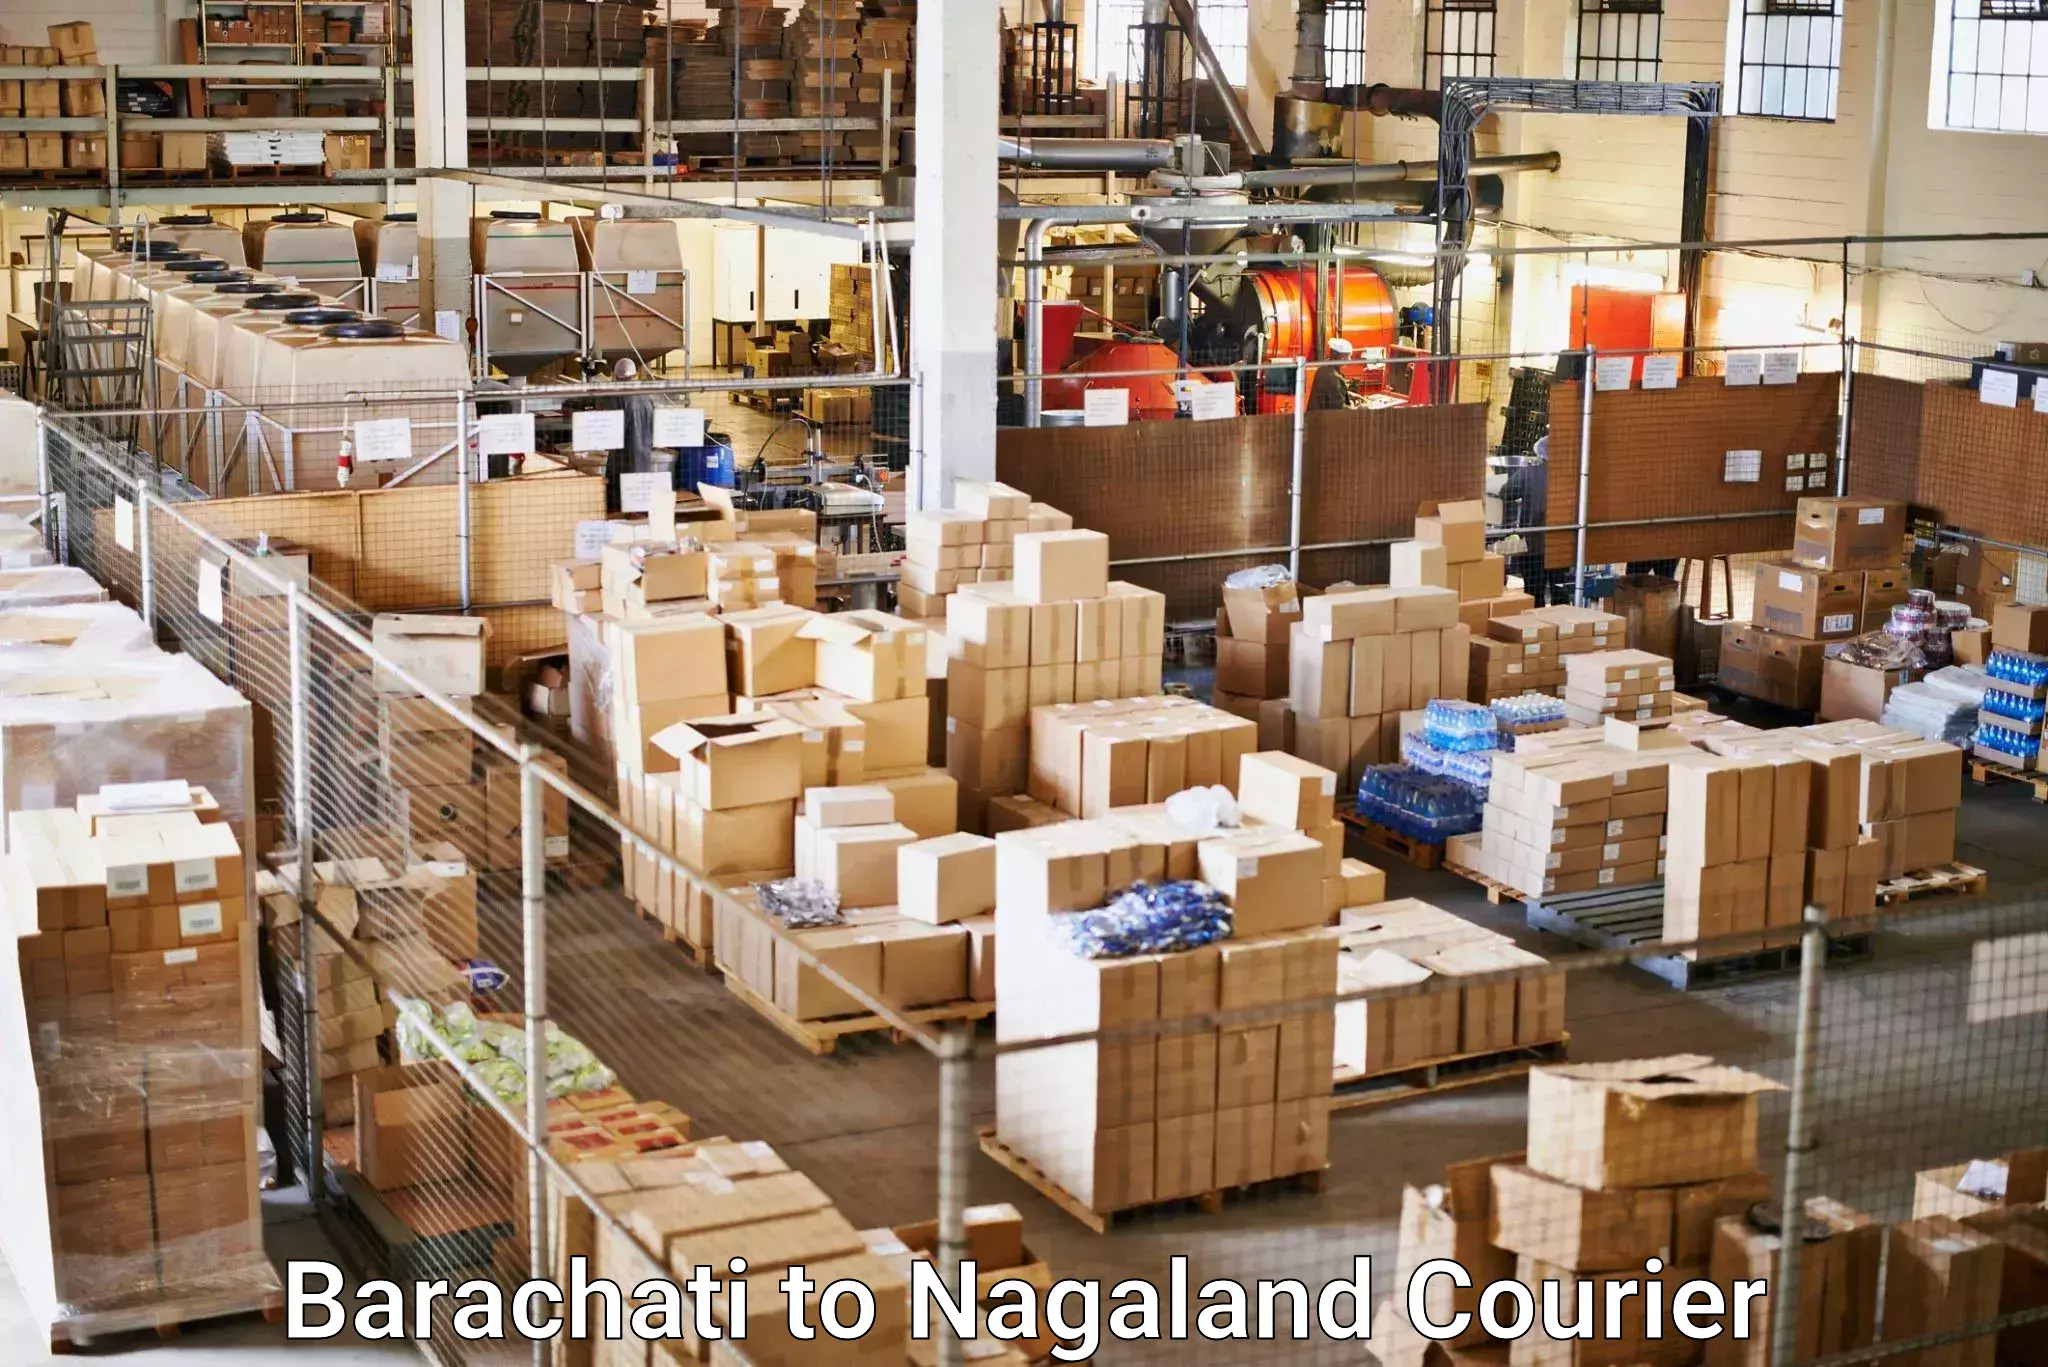 Individual parcel service Barachati to Nagaland